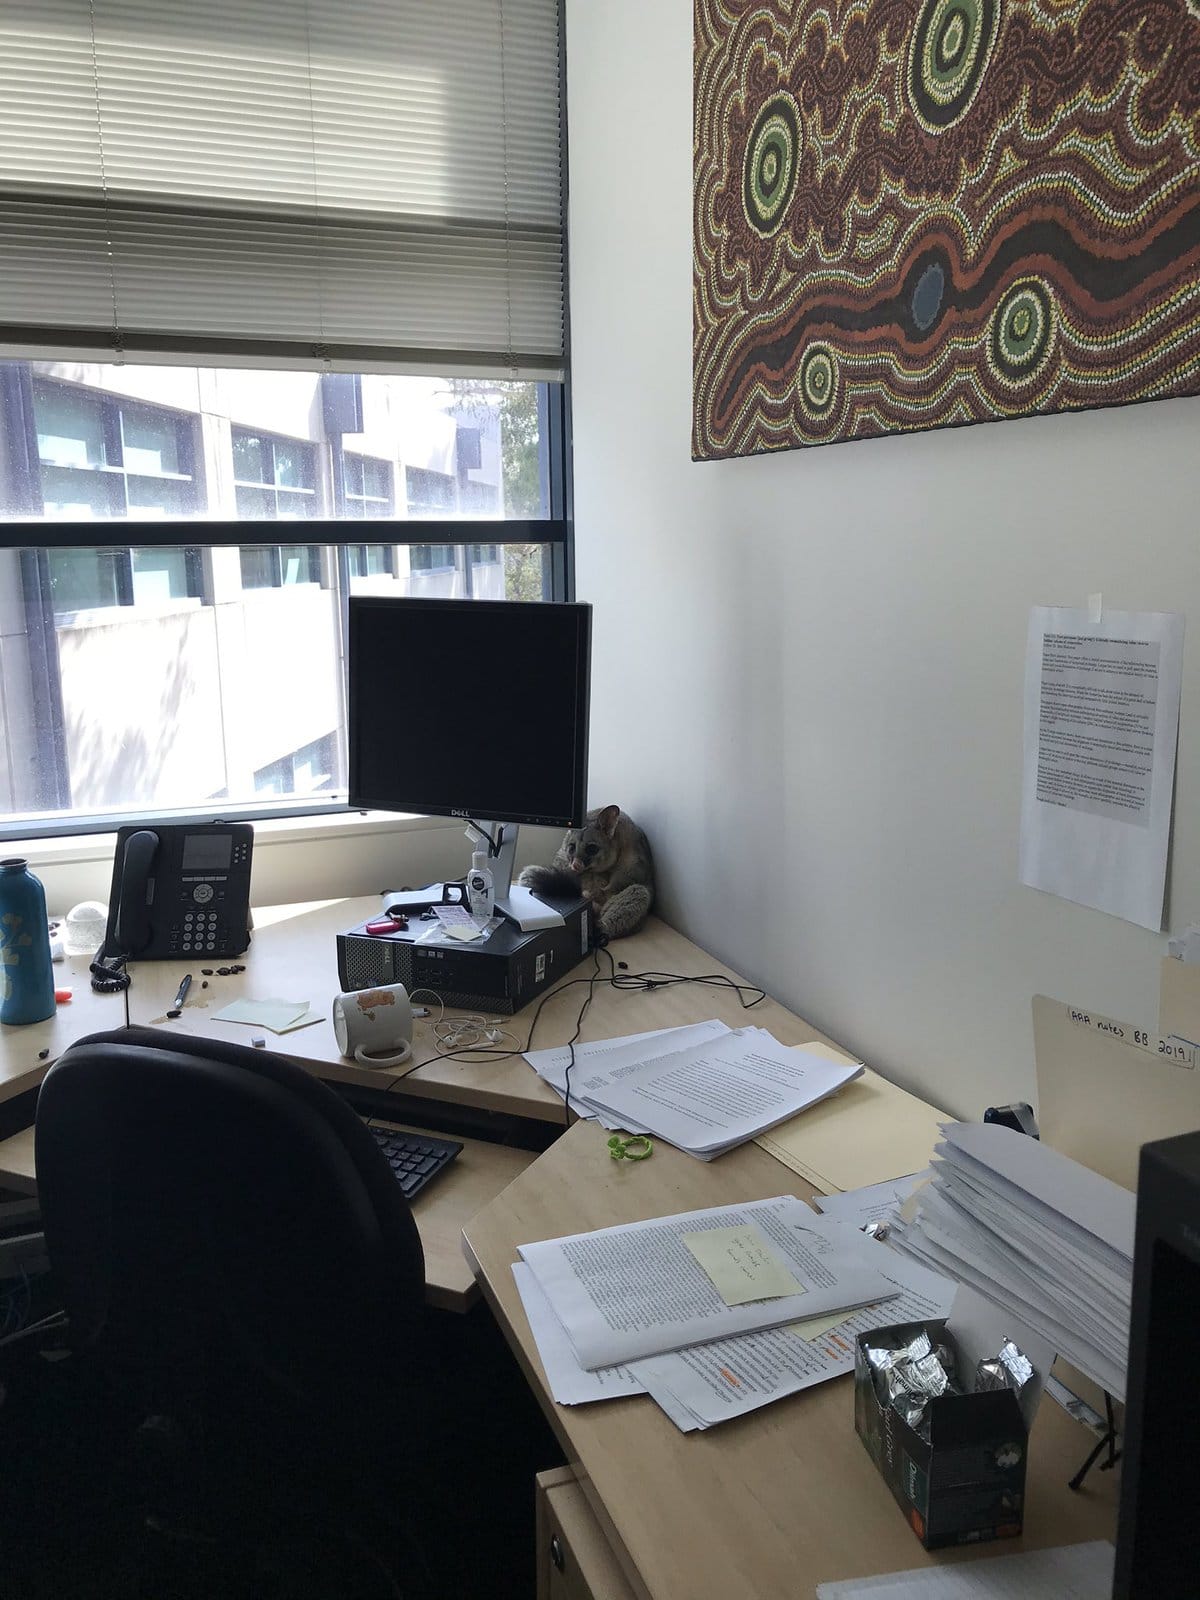 Австралийка обнаружила в офисе погром, думала, что воры, а это милашка-поссум. И он просто создан для мемов 68